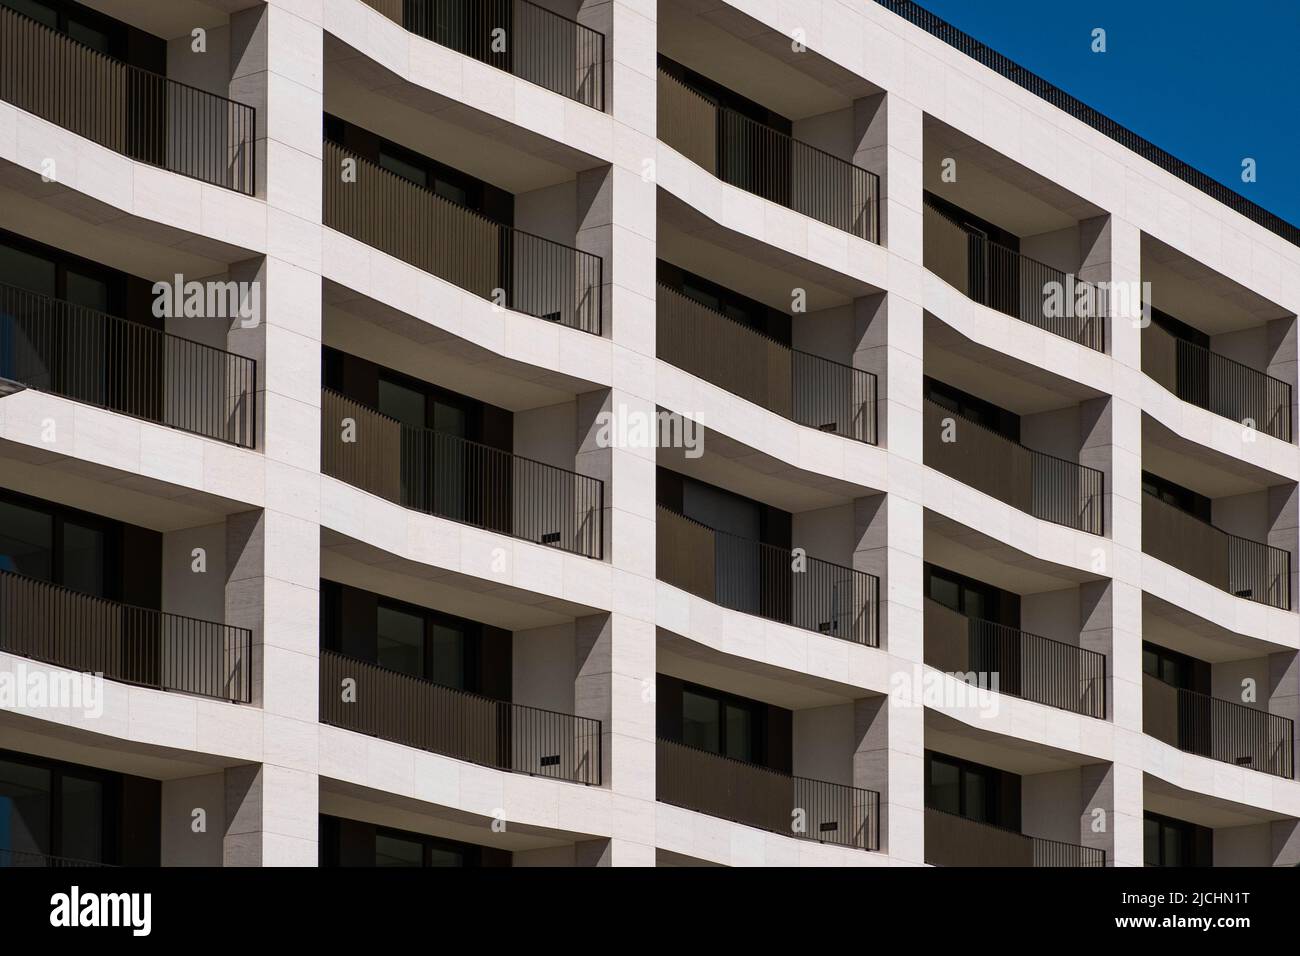 moderno inmueble residencial, fachada de edificio de apartamentos Foto de stock